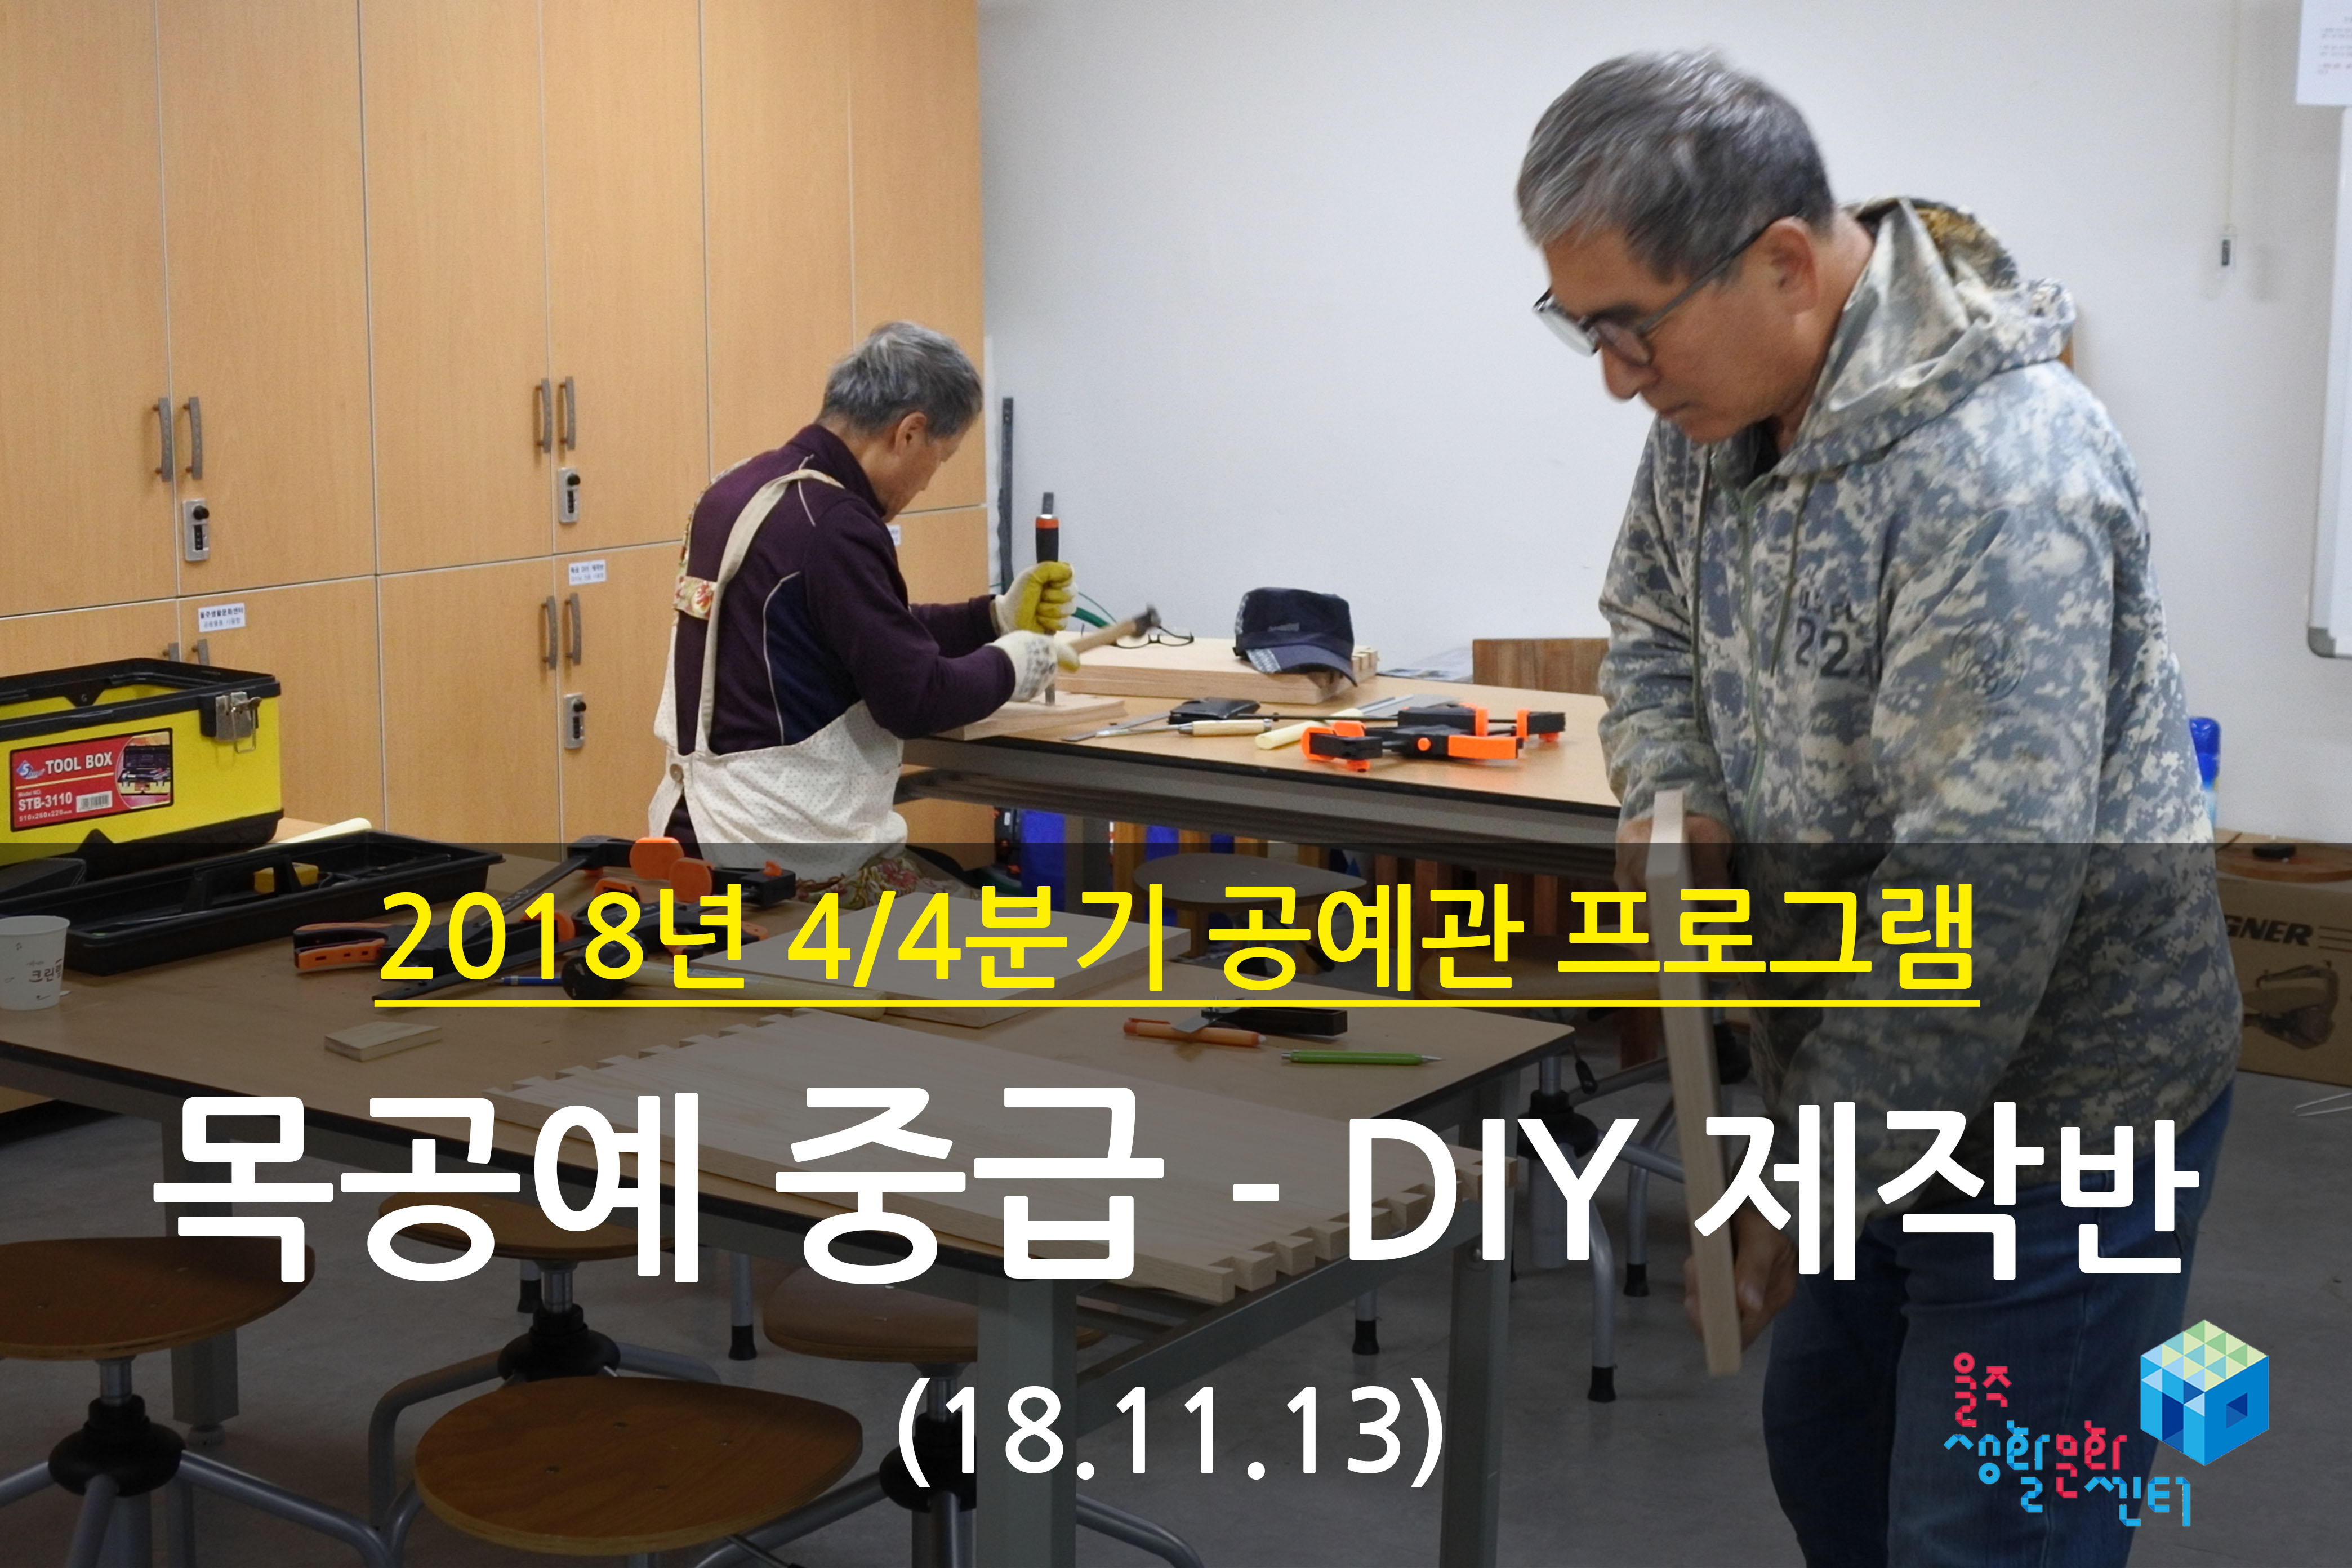 2018.11.13 _ 목공예 중급 - DIY 제작반 _ 4/4분기 6주차 수업